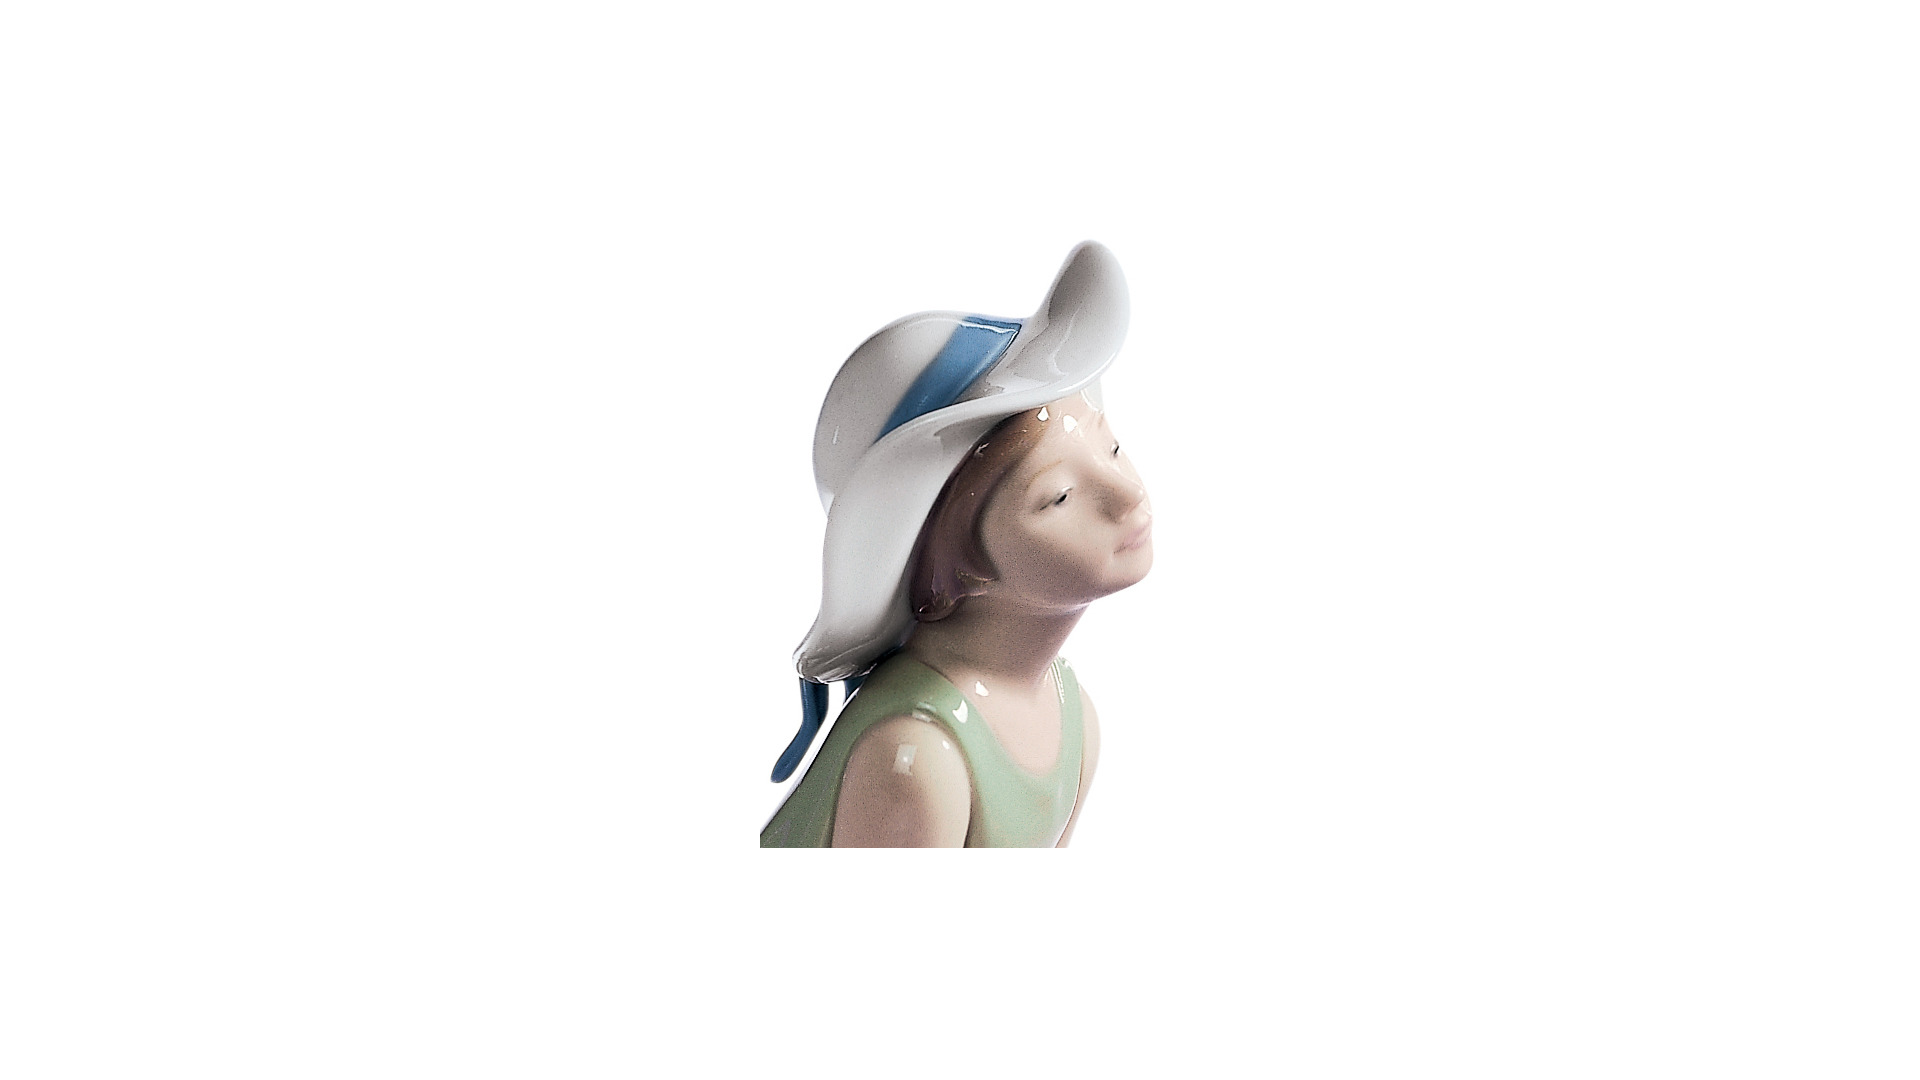 Фигурка Lladro Любопытная девочка в соломенной шляпе 9х25 см, фарфор